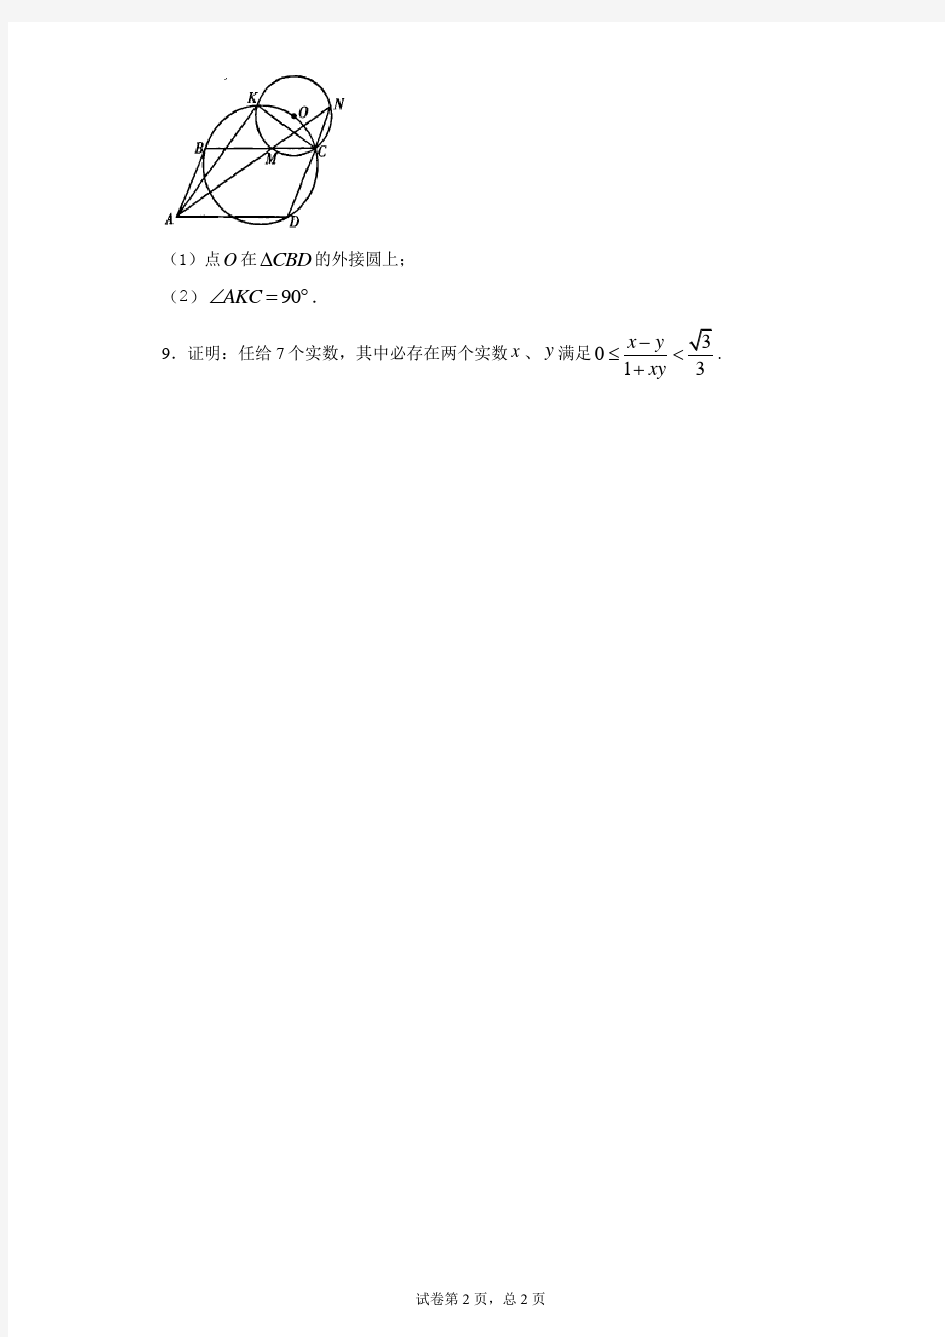 2021年北京市中学生数学竞赛复赛(高一)试题 答案和解析